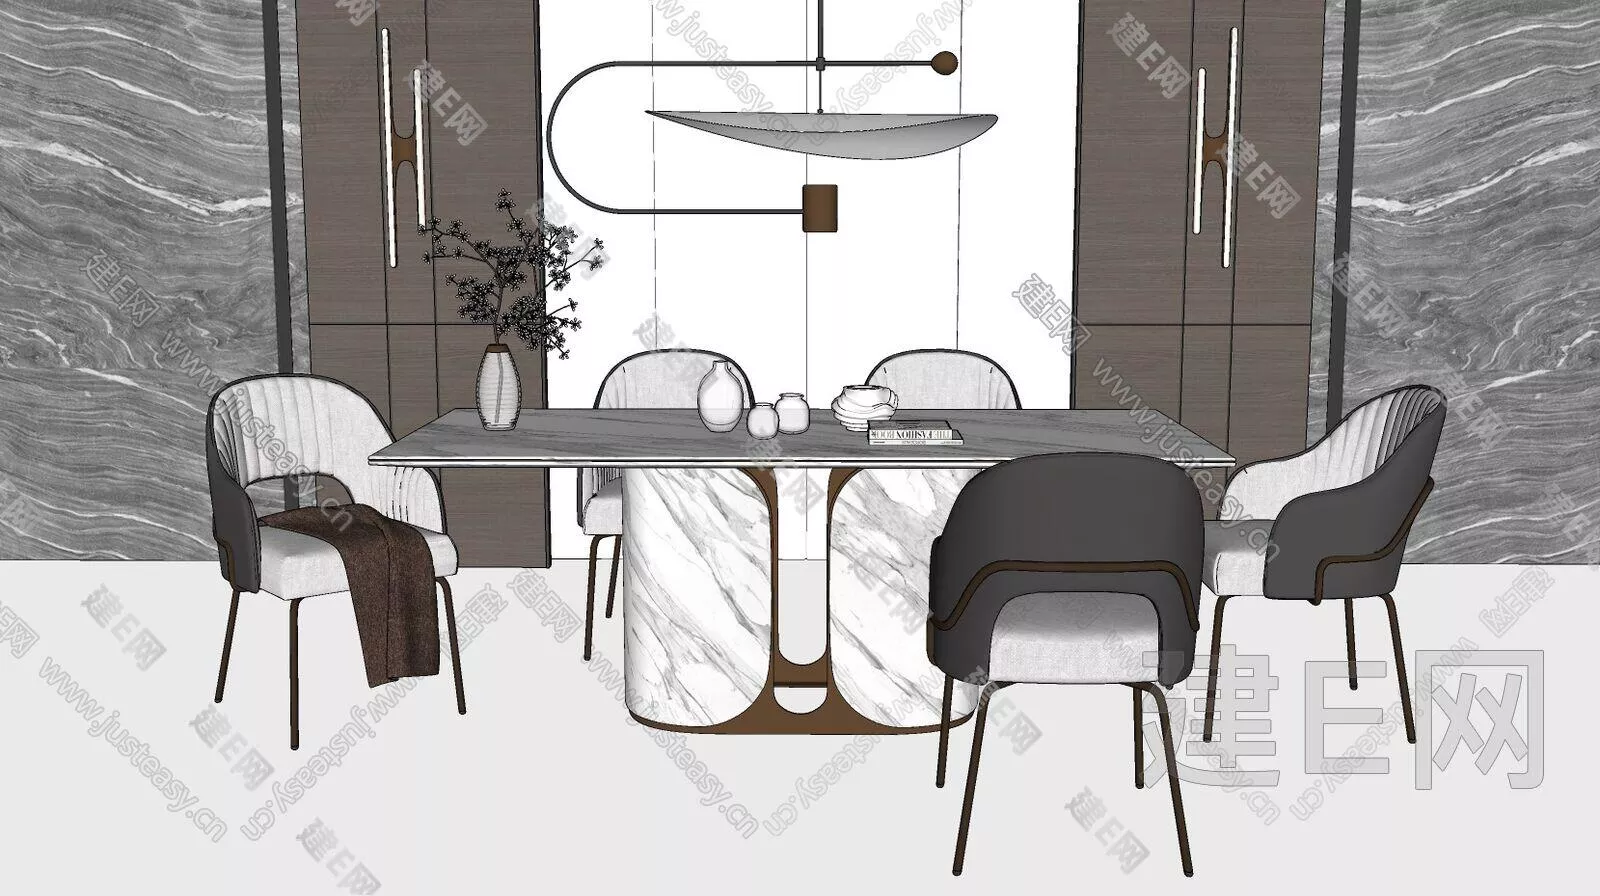 MODERN DINING TABLE SET - SKETCHUP 3D MODEL - ENSCAPE - 106709195